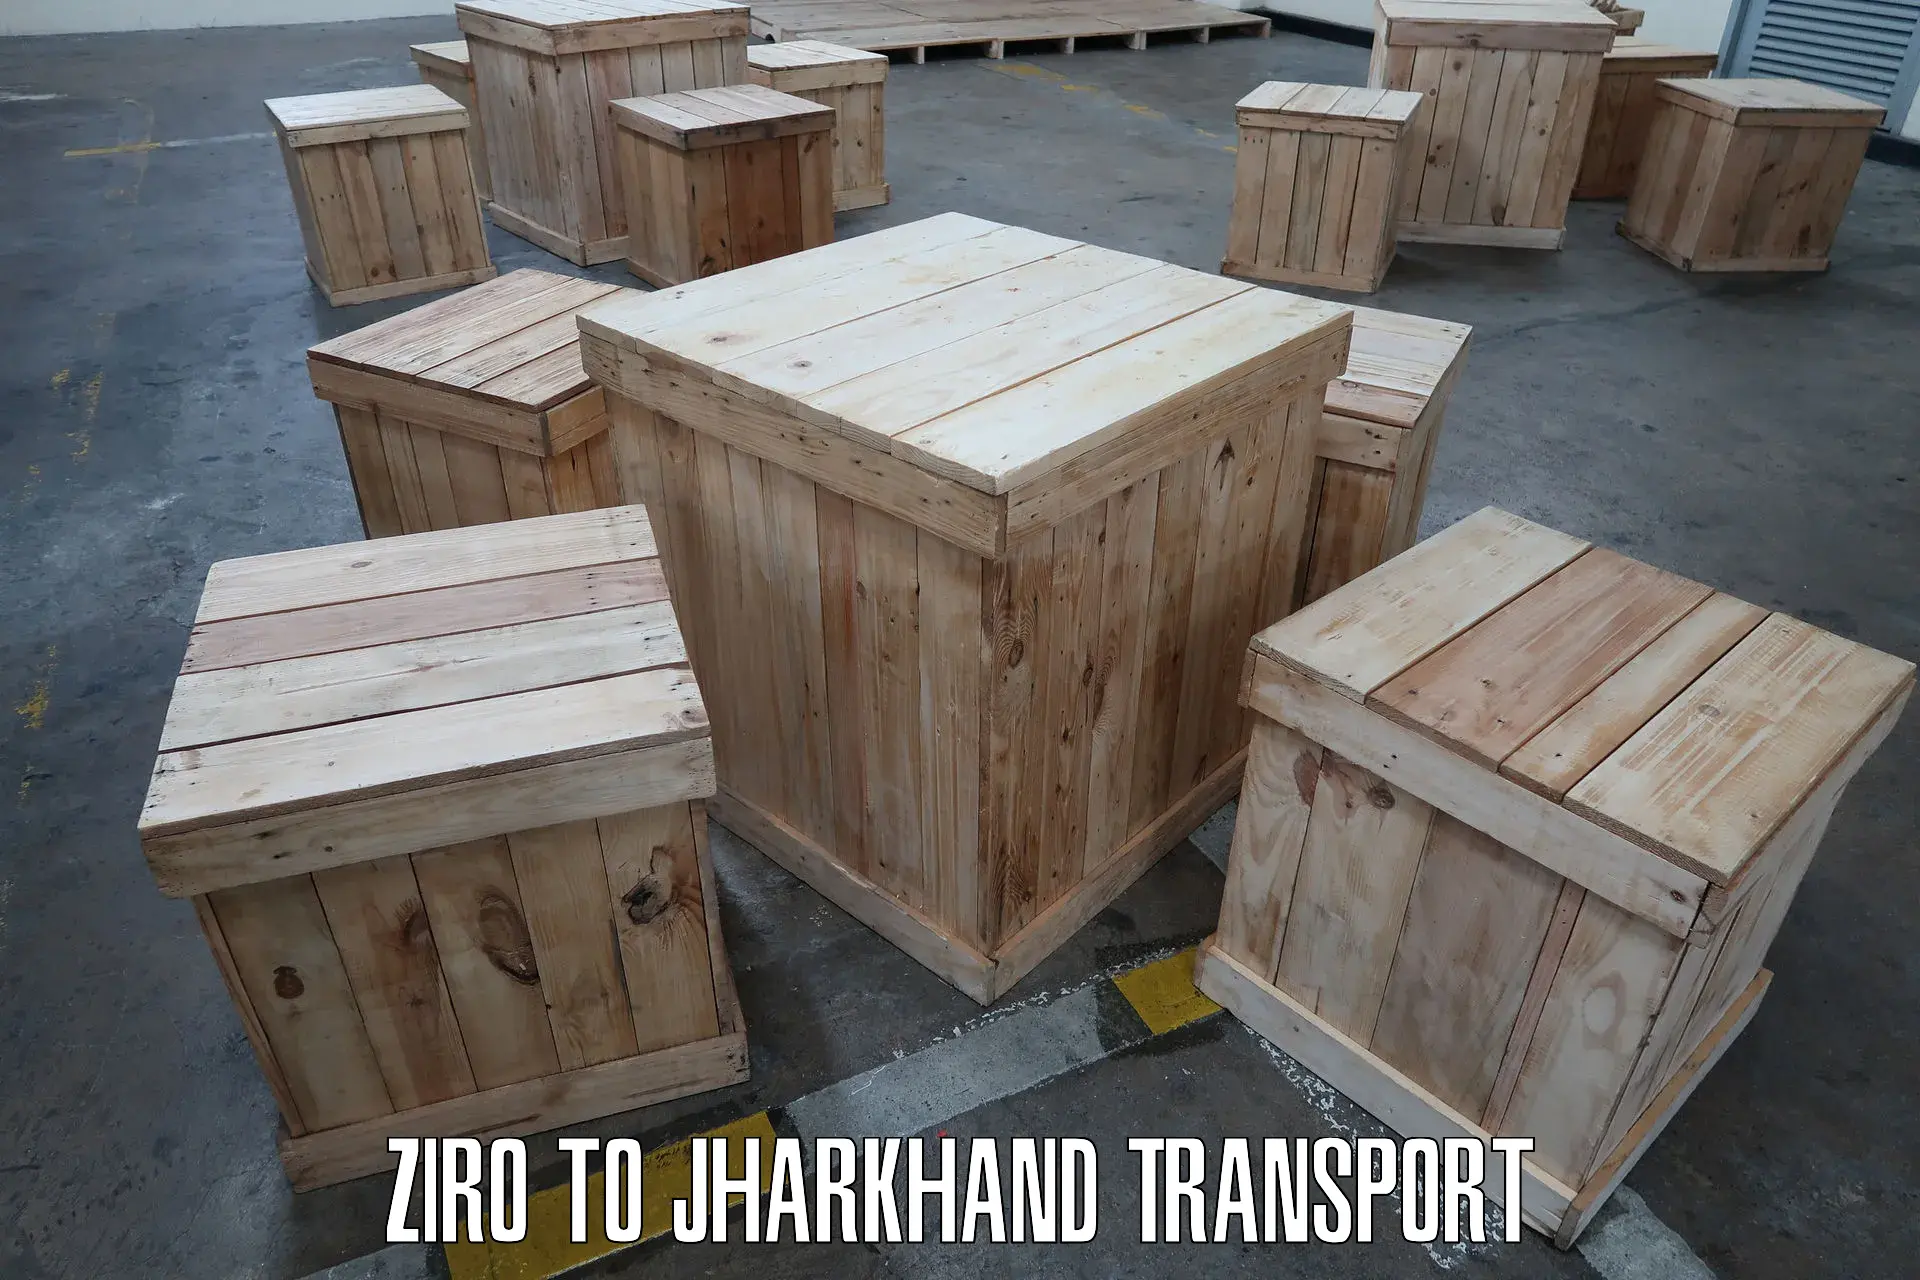 Online transport service Ziro to Hazaribagh